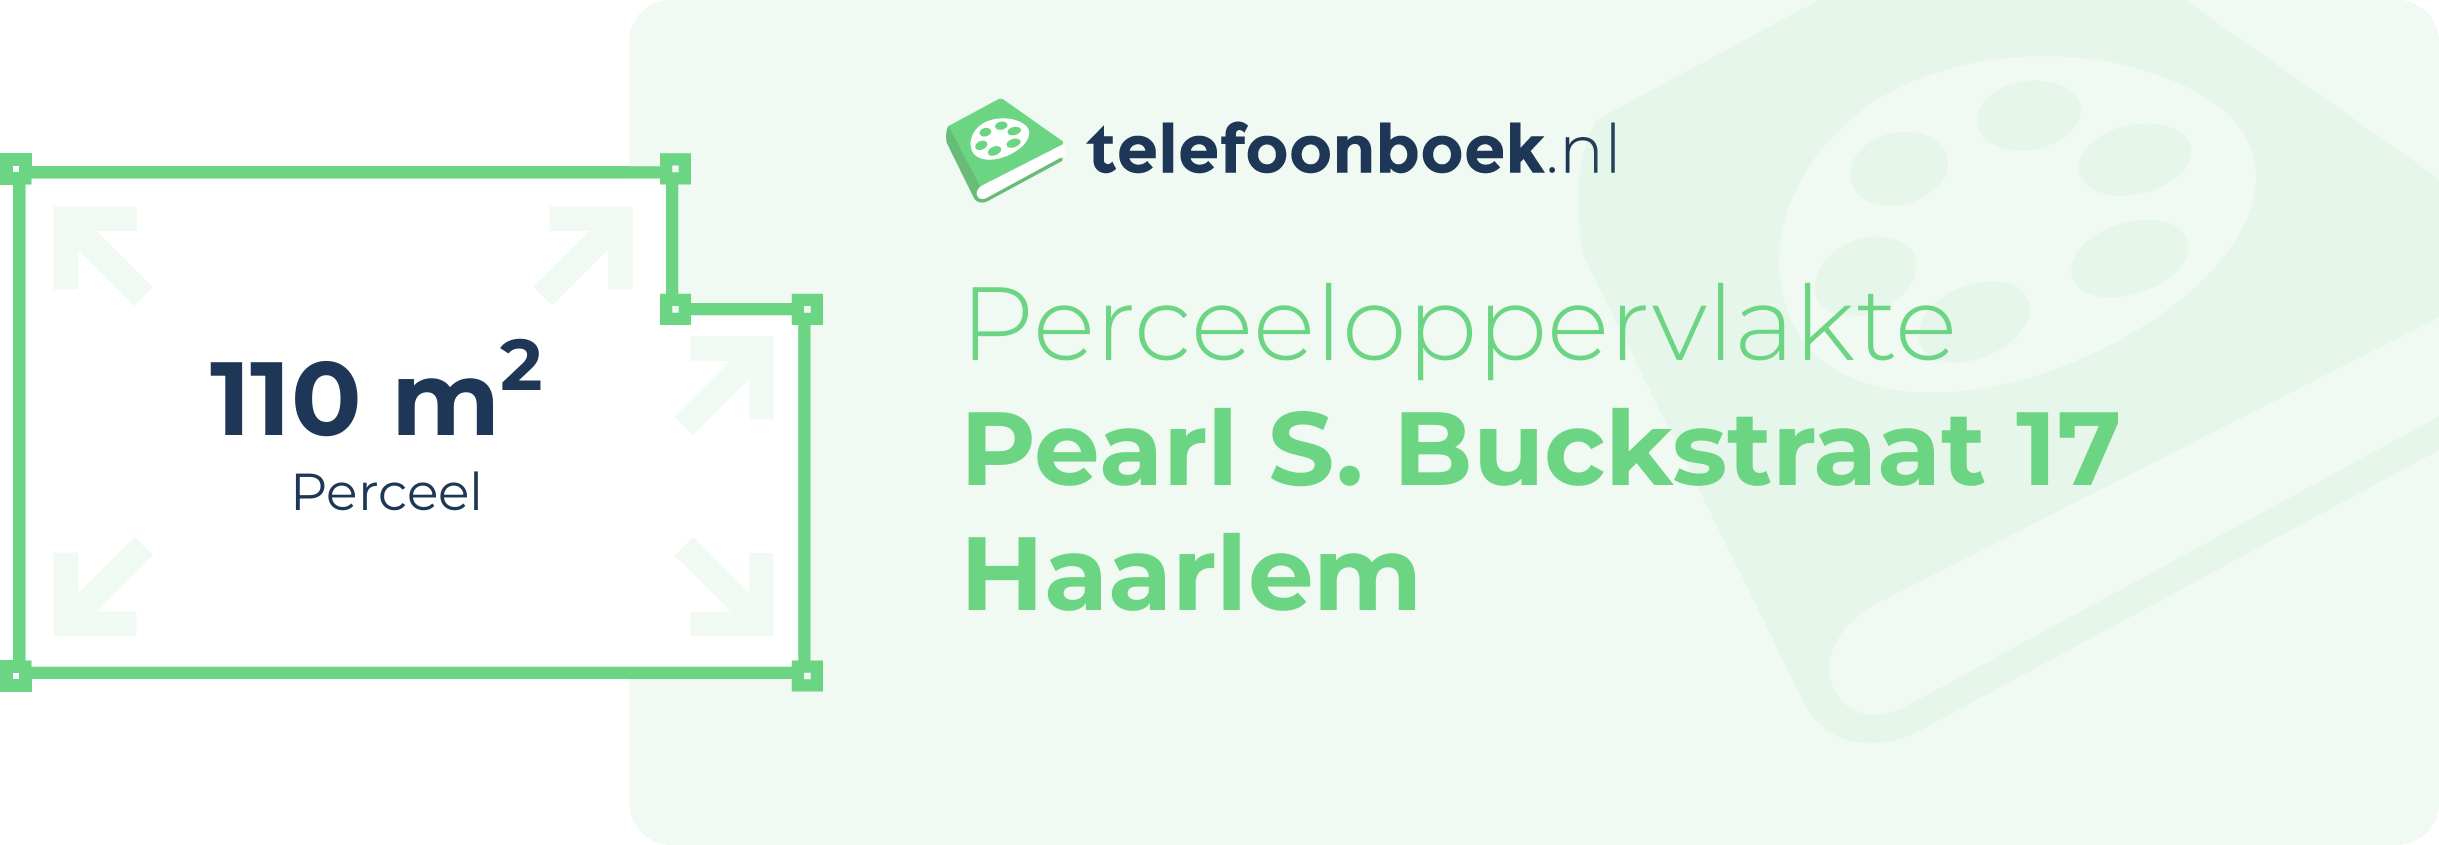 Perceeloppervlakte Pearl S. Buckstraat 17 Haarlem